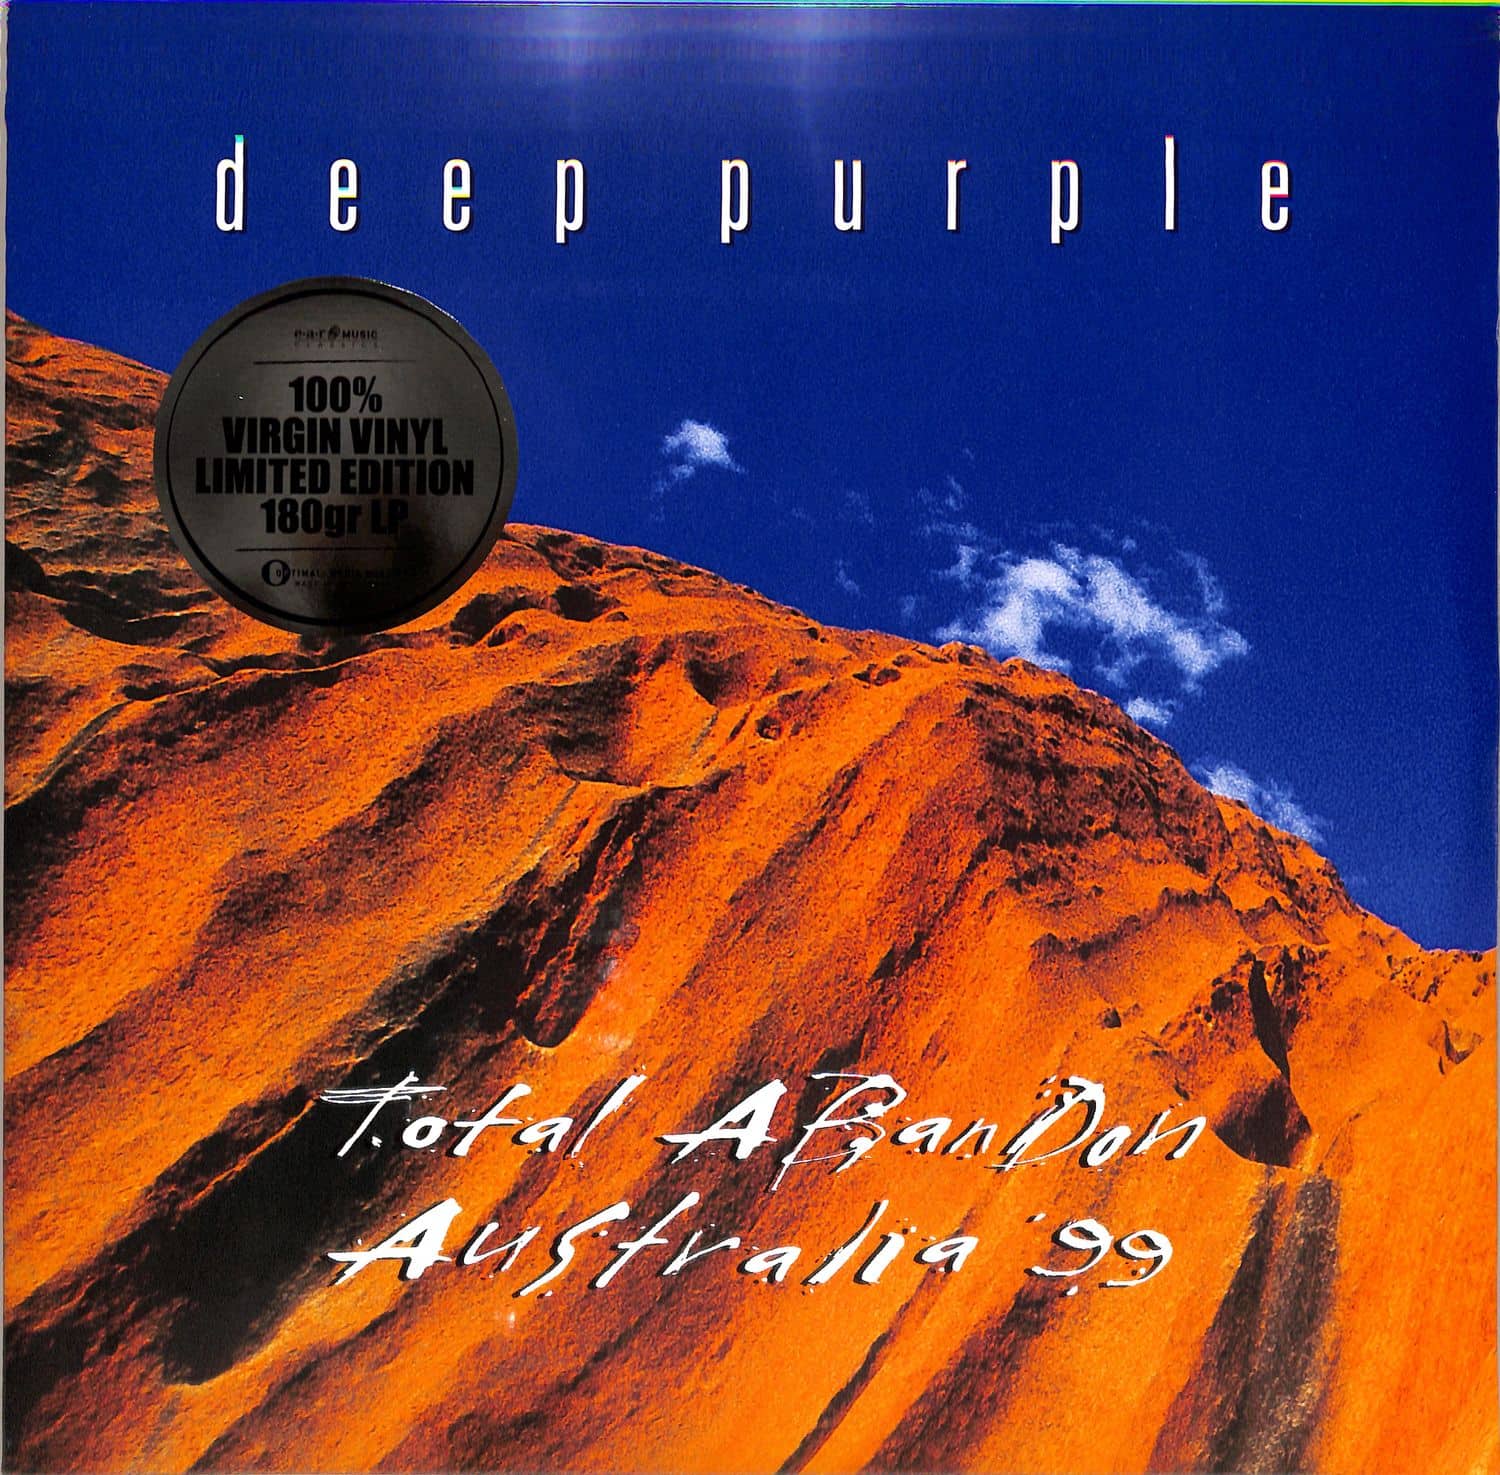 Deep Purple - TOTAL ABANDON - AUSTRALIA 99 